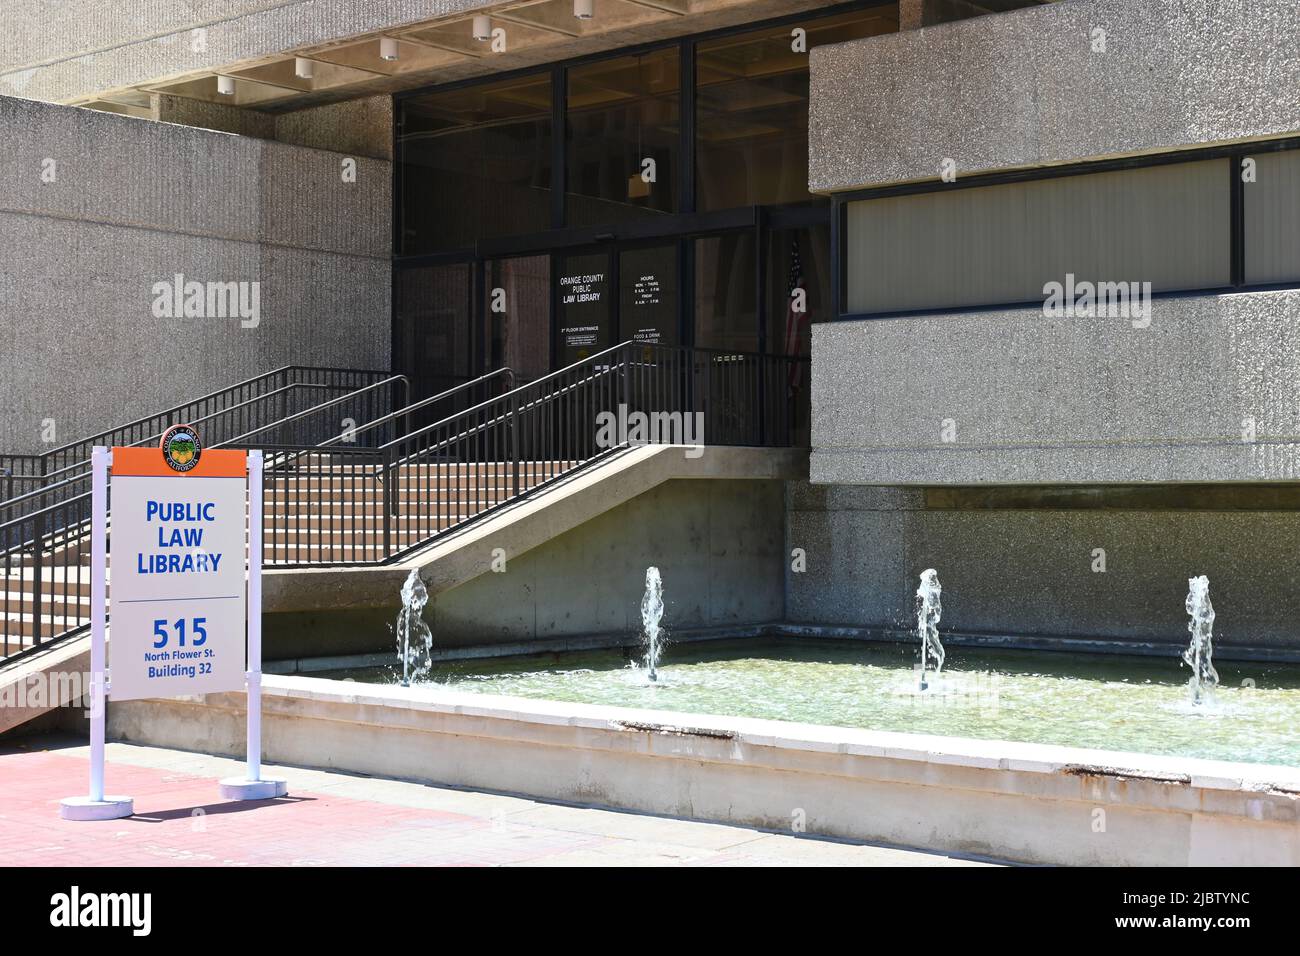 SANTA ANA, KALIFORNIEN - 2. JUNI 2022: Das Gebäude der Orange County Public Law Library im Santa Ana Civic Center. Stockfoto